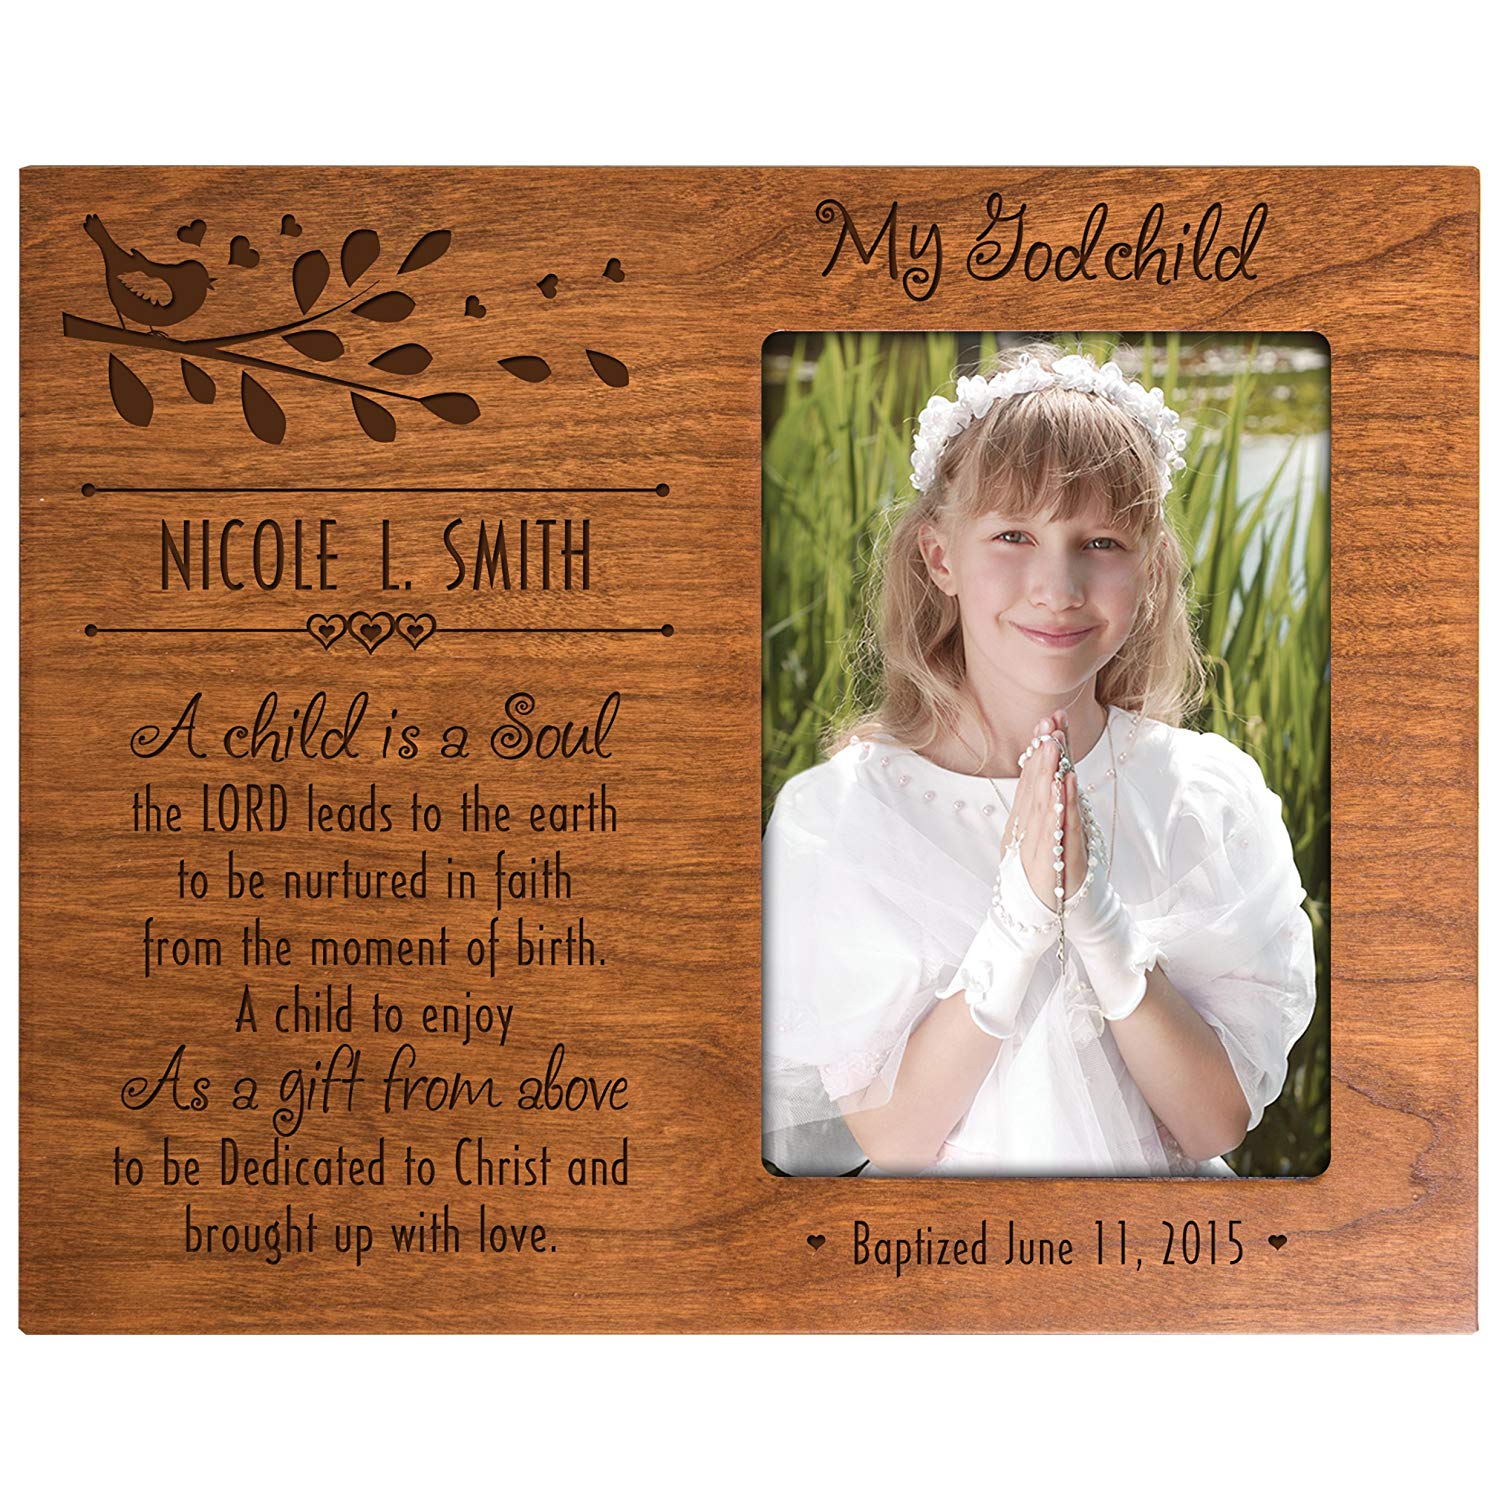 Personalized Baptism Photo Frame Gift "My Godchild" - LifeSong Milestones